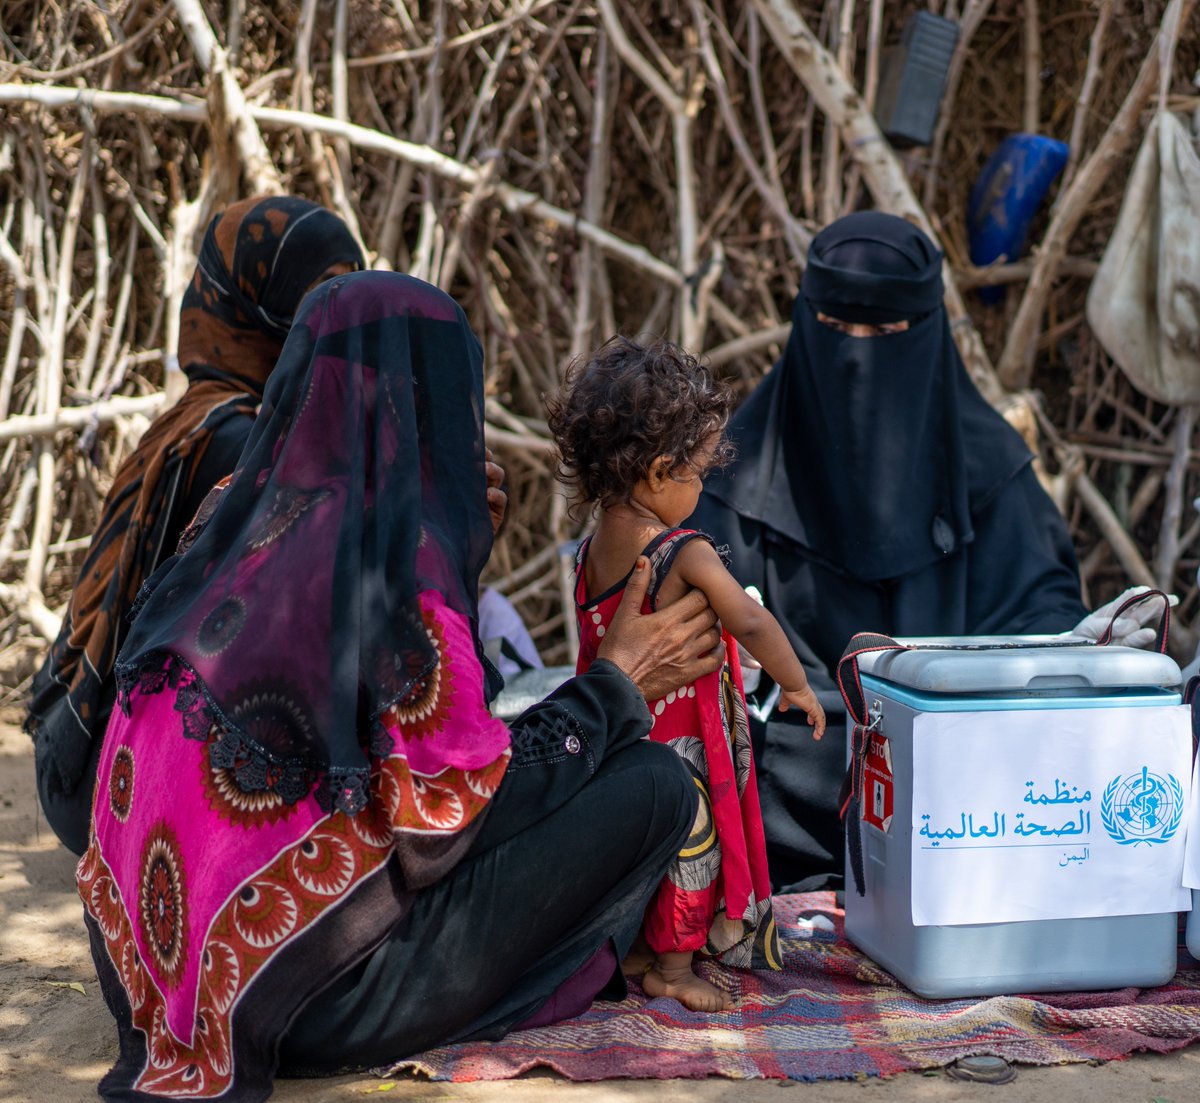 لا تزال الفئات الاكثر ضعفاً تتحمل وطأة الأزمة في اليمن. تشمل هذه المجموعات النازحين داخلياً، والأطفال، والنساء، وكبار السن، والأشخاص ذوي الاحتياجات الخاصة، والأشخاص الذين يعانون من أمراض نفسية. لجميع الناس الحق في الصحة. 🔗shorturl.at/hpyRU